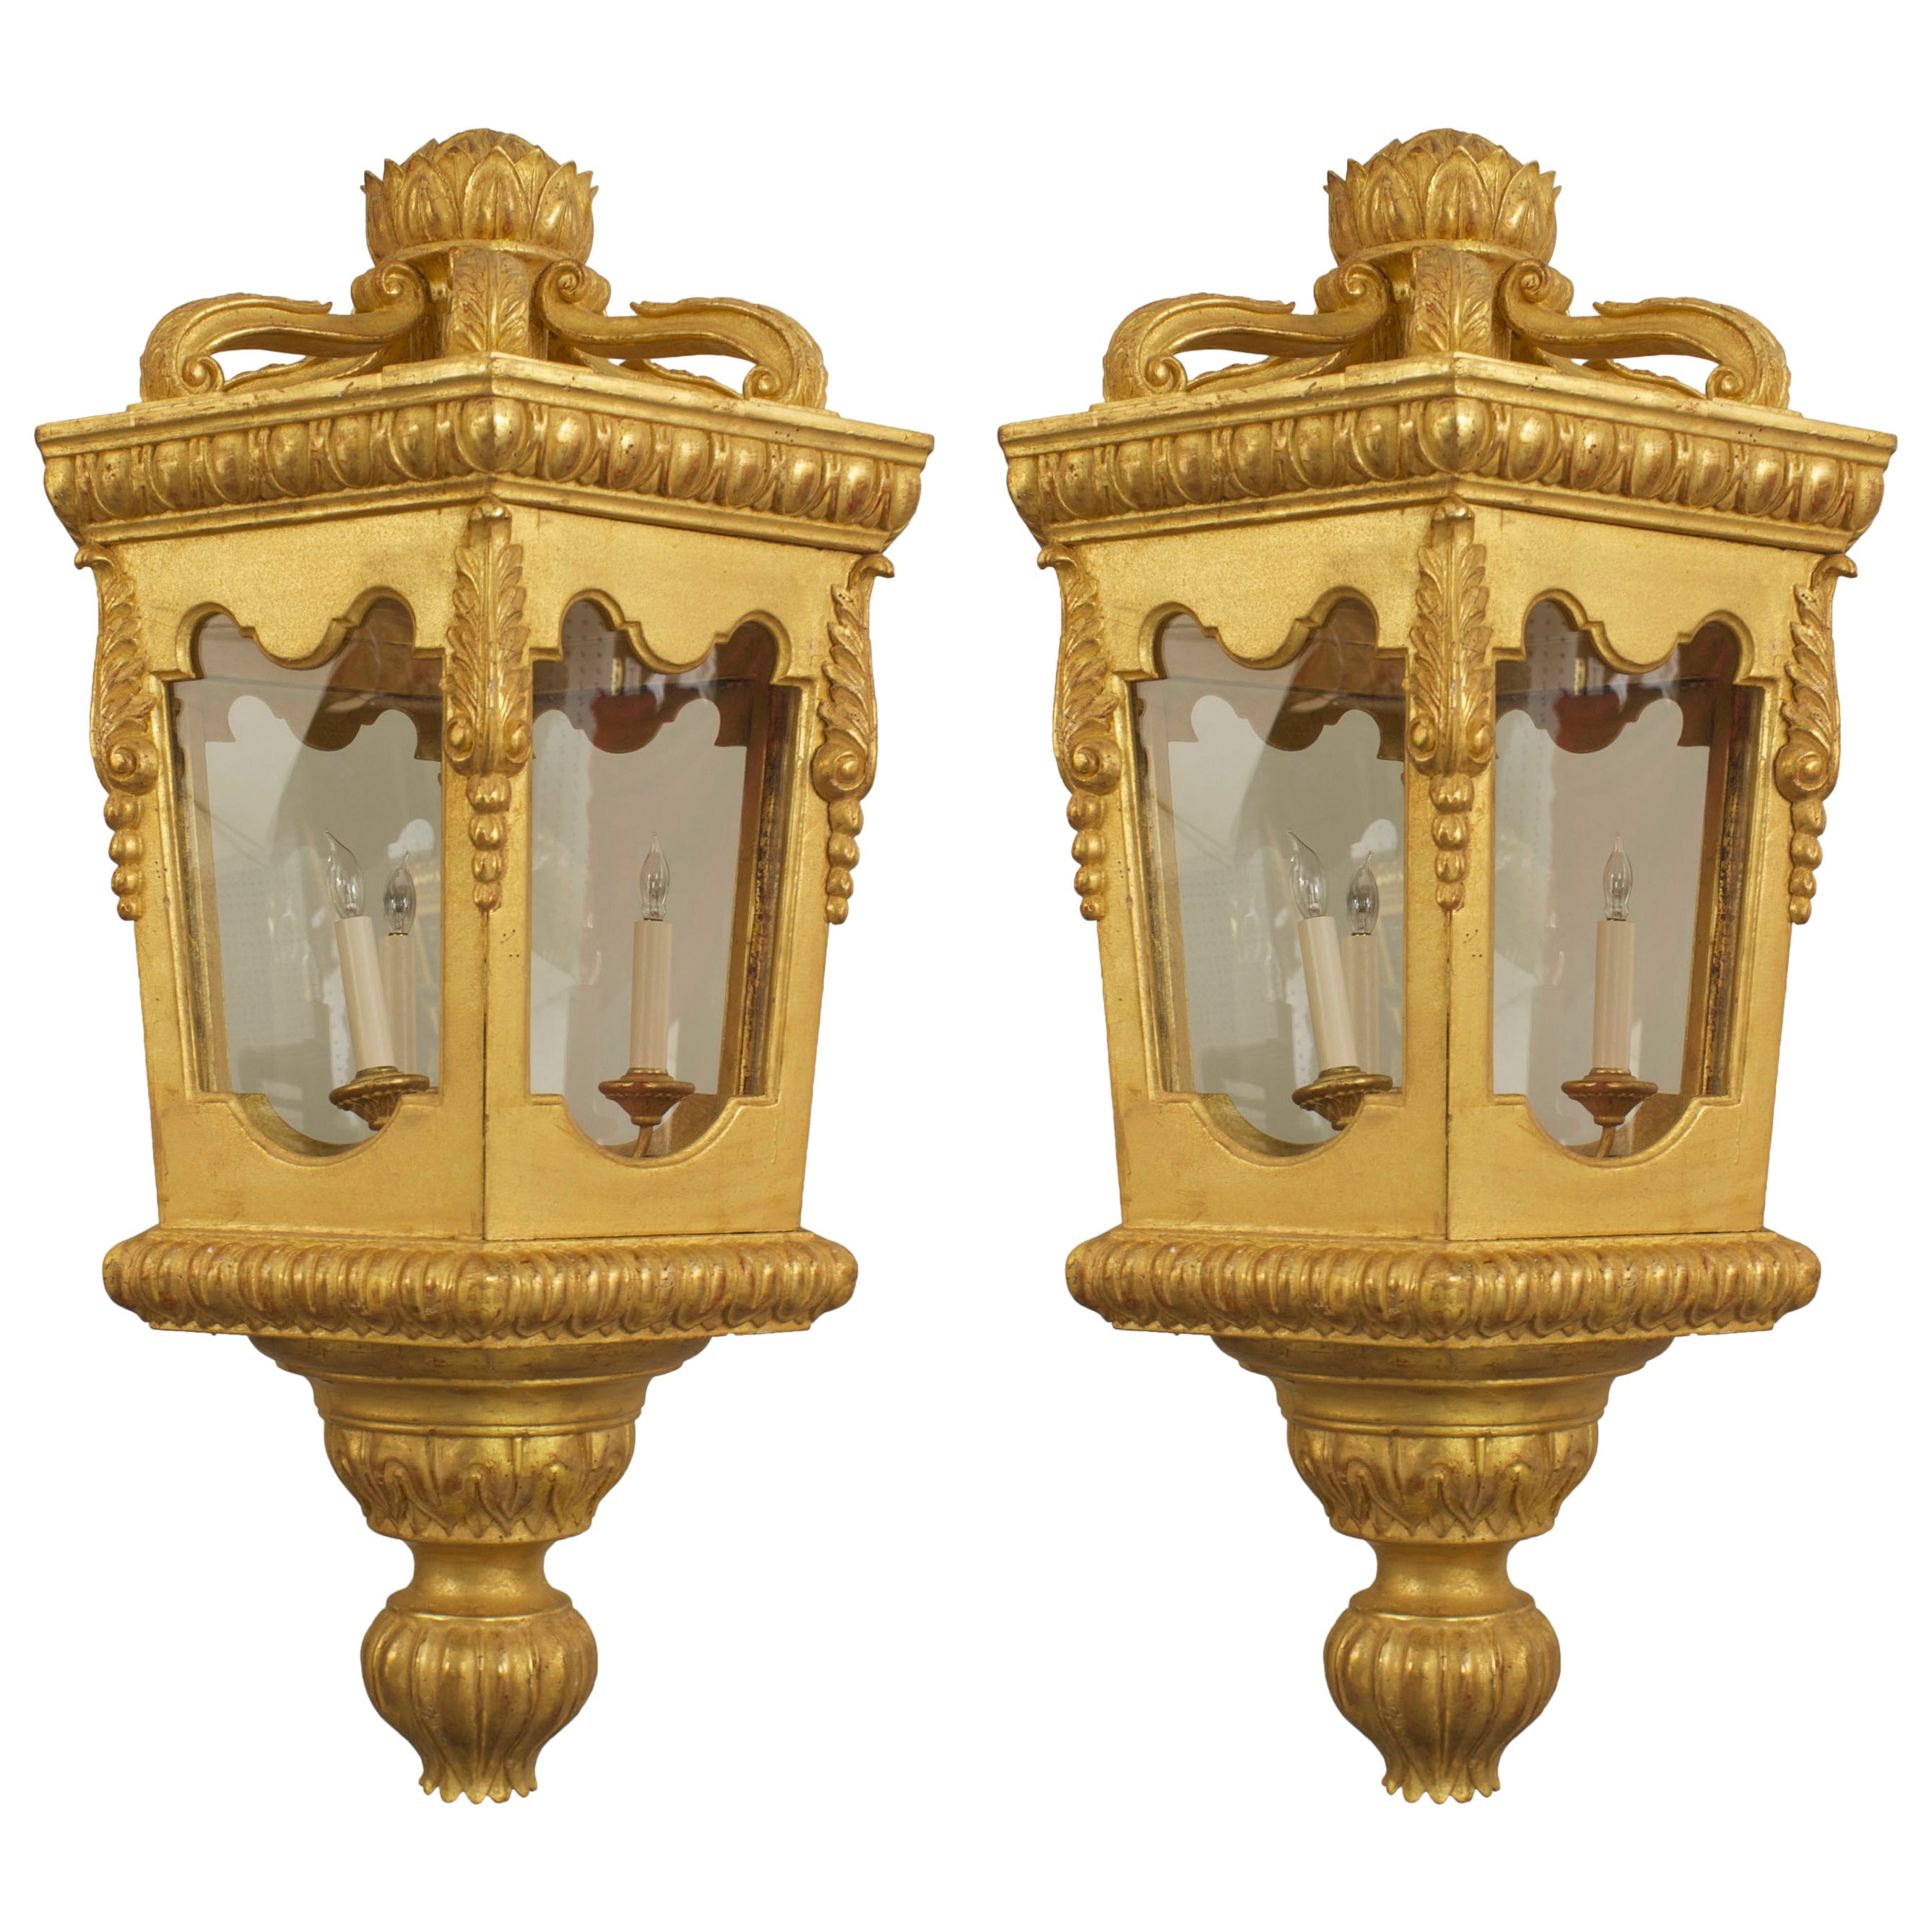 2 lanternes octogonales dorées italiennes de style rococo